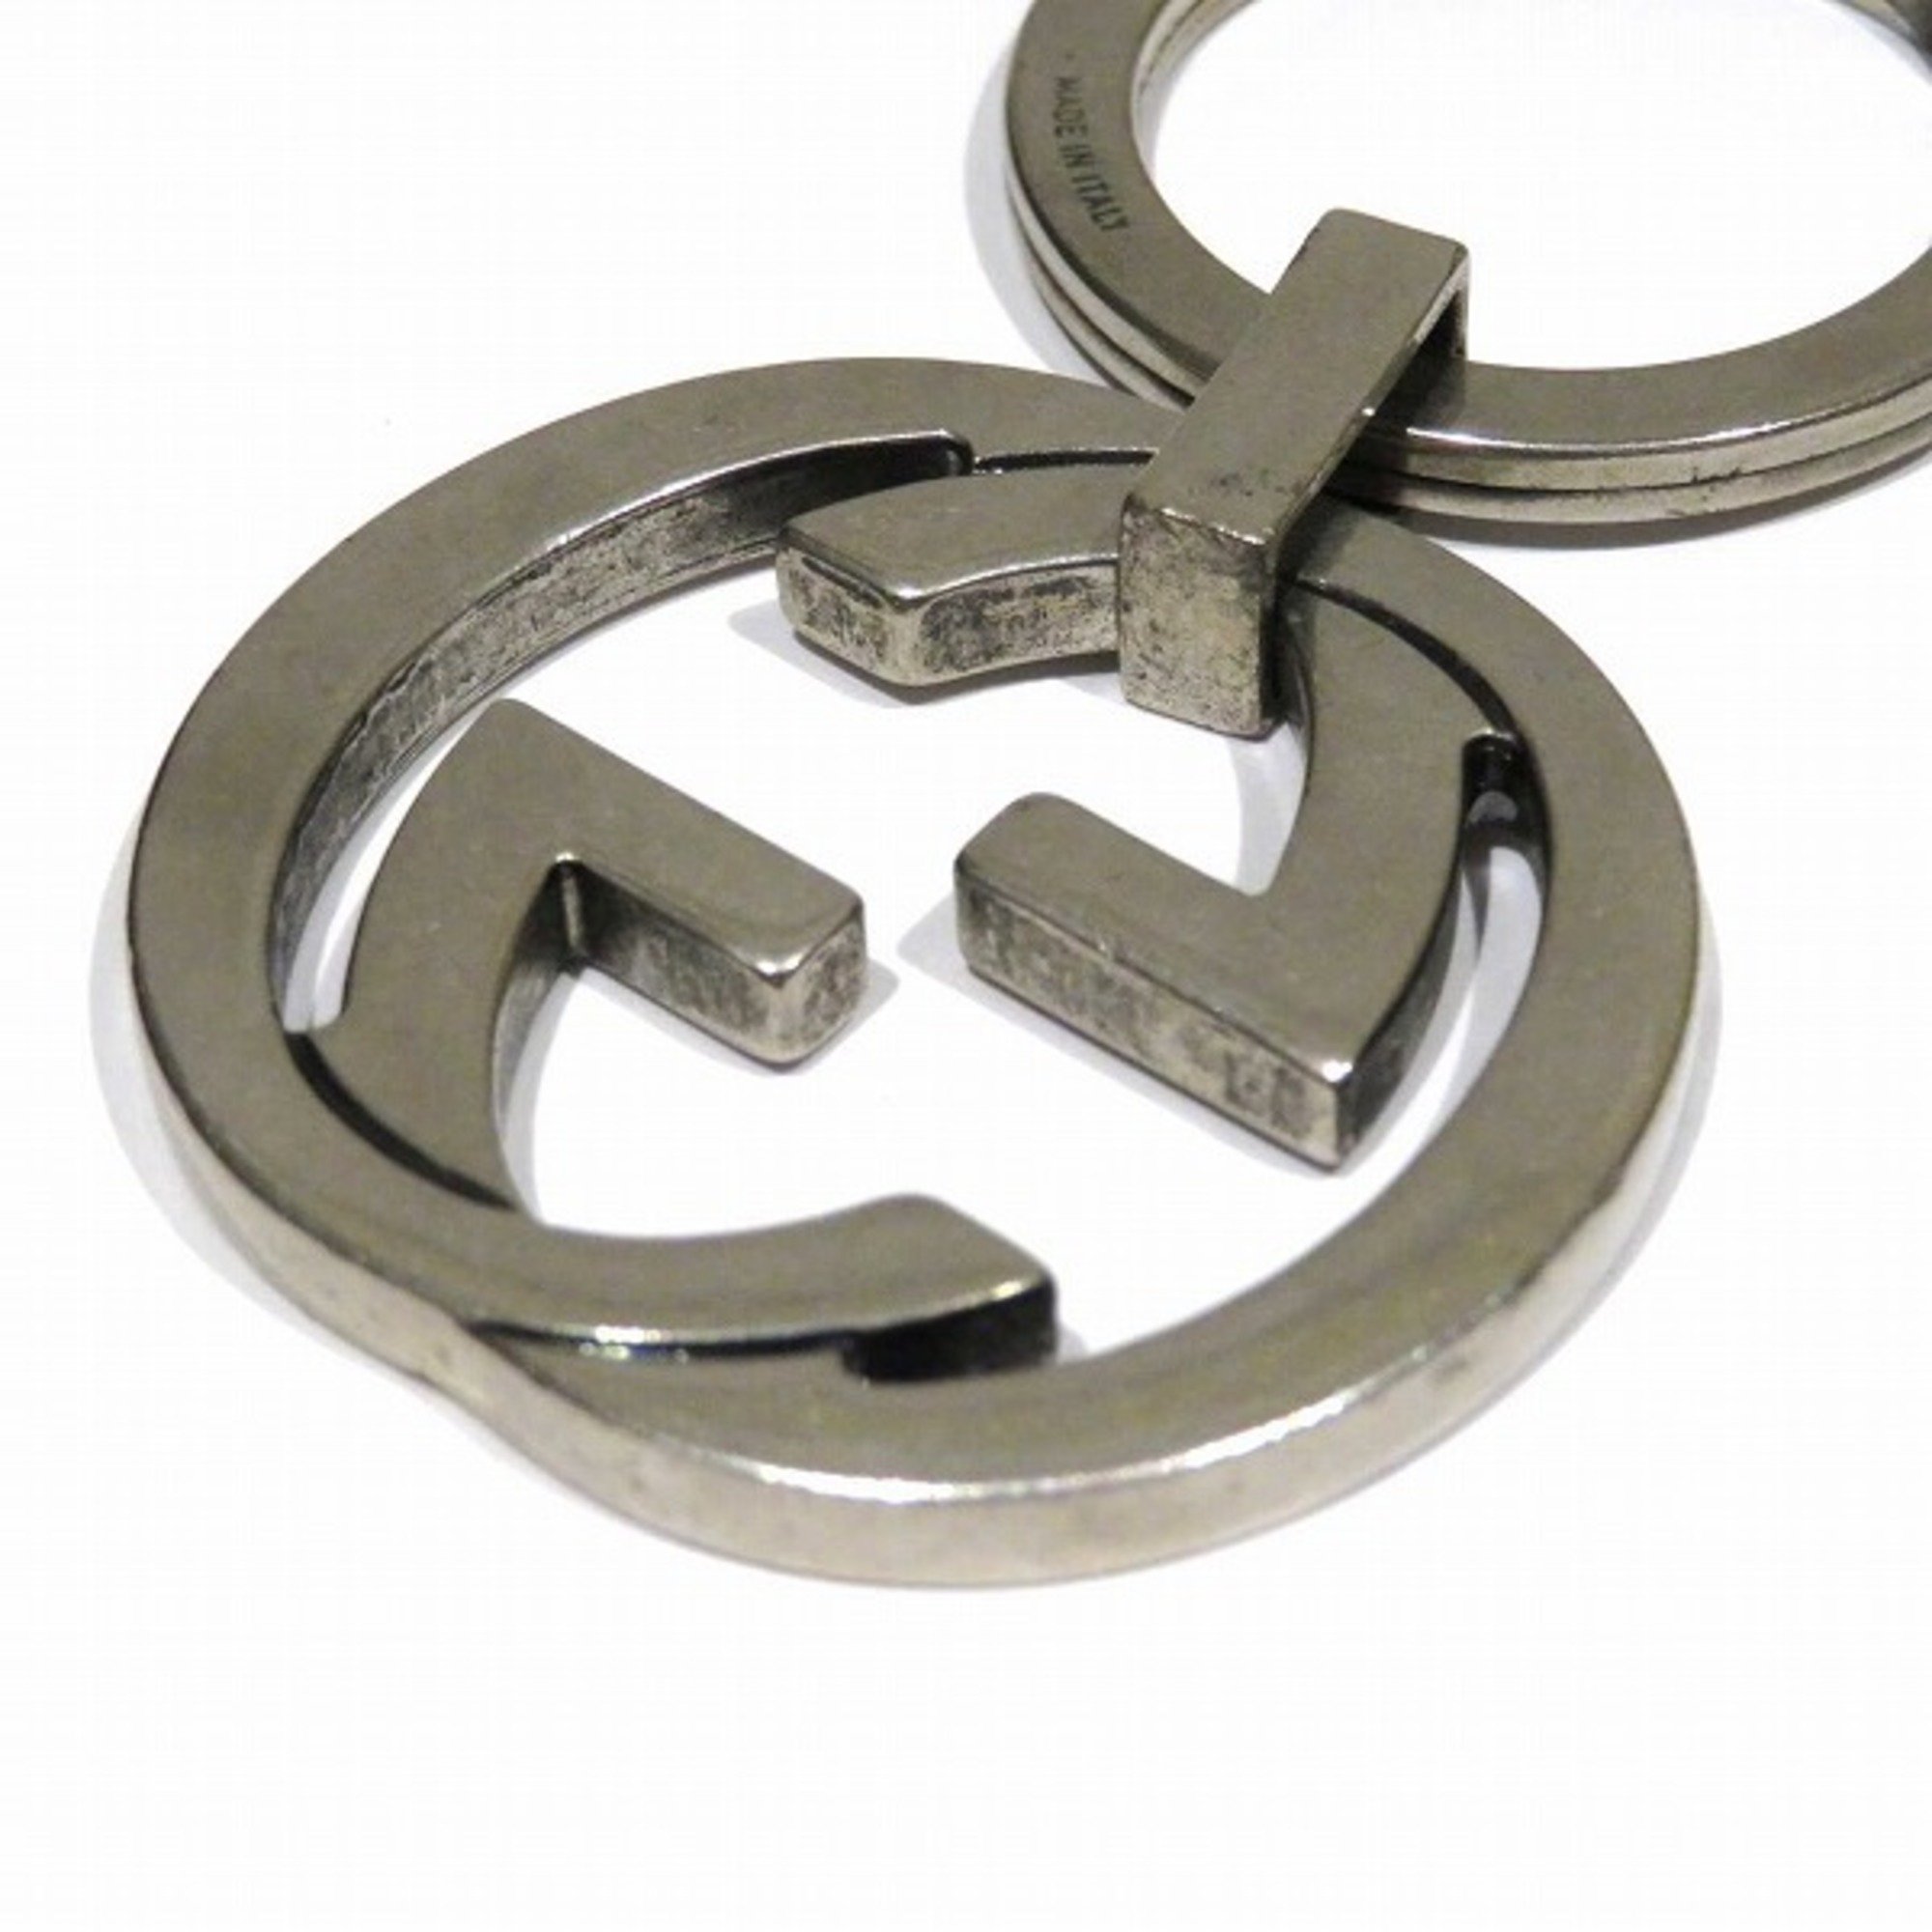 GUCCI Interlocking G Brand Accessories Keychain Men's